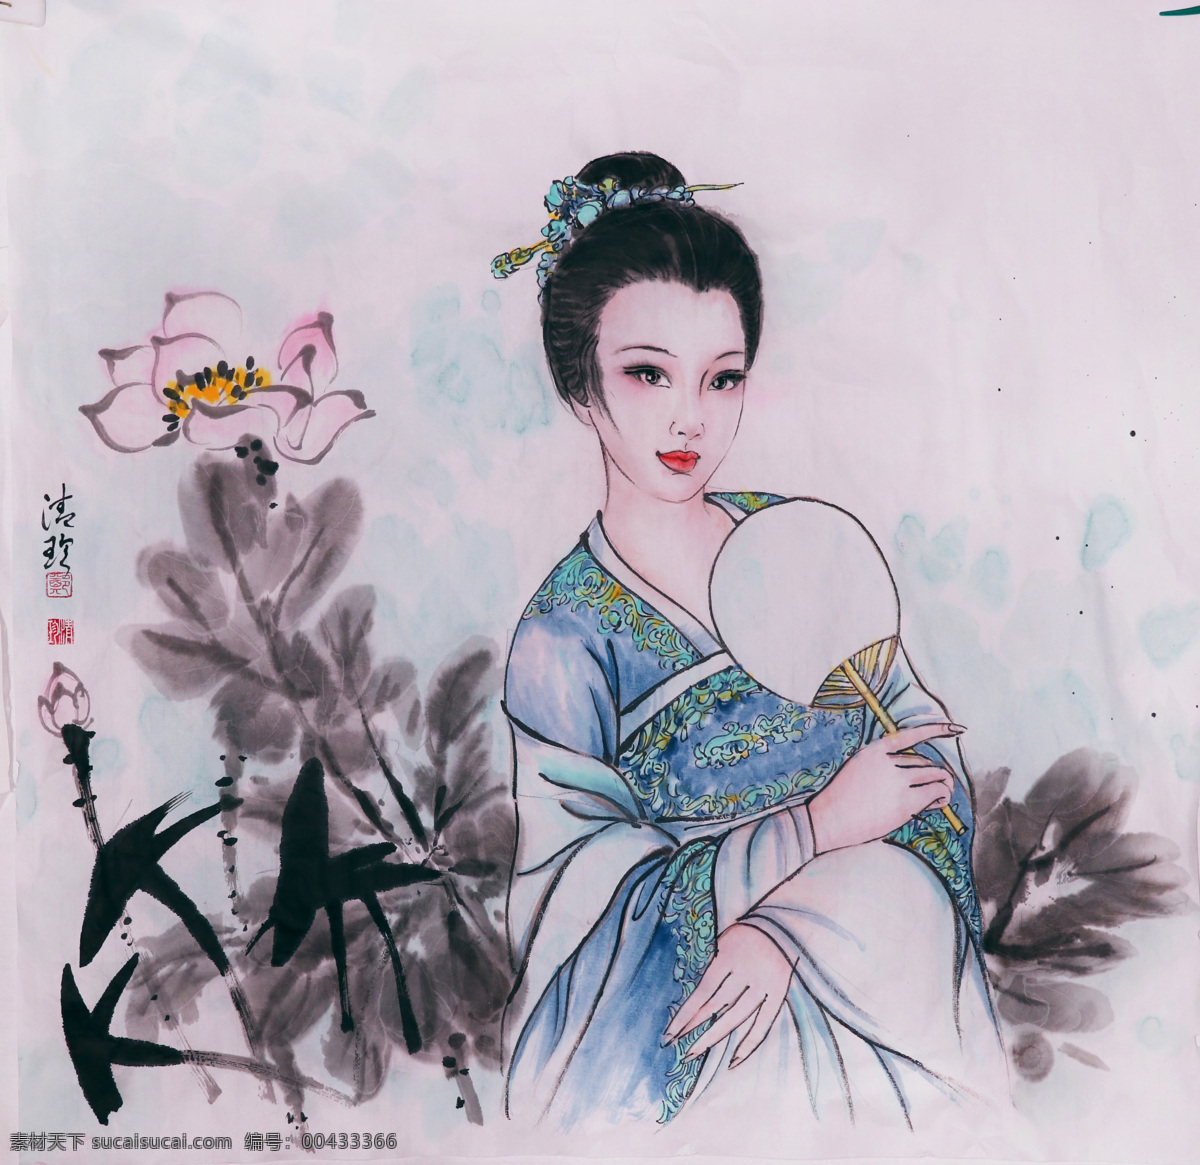 郑 清 珍 仕女图 郑清珍 仕女 美女 现代 肖像 中国画 绘画 文化艺术 绘画书法